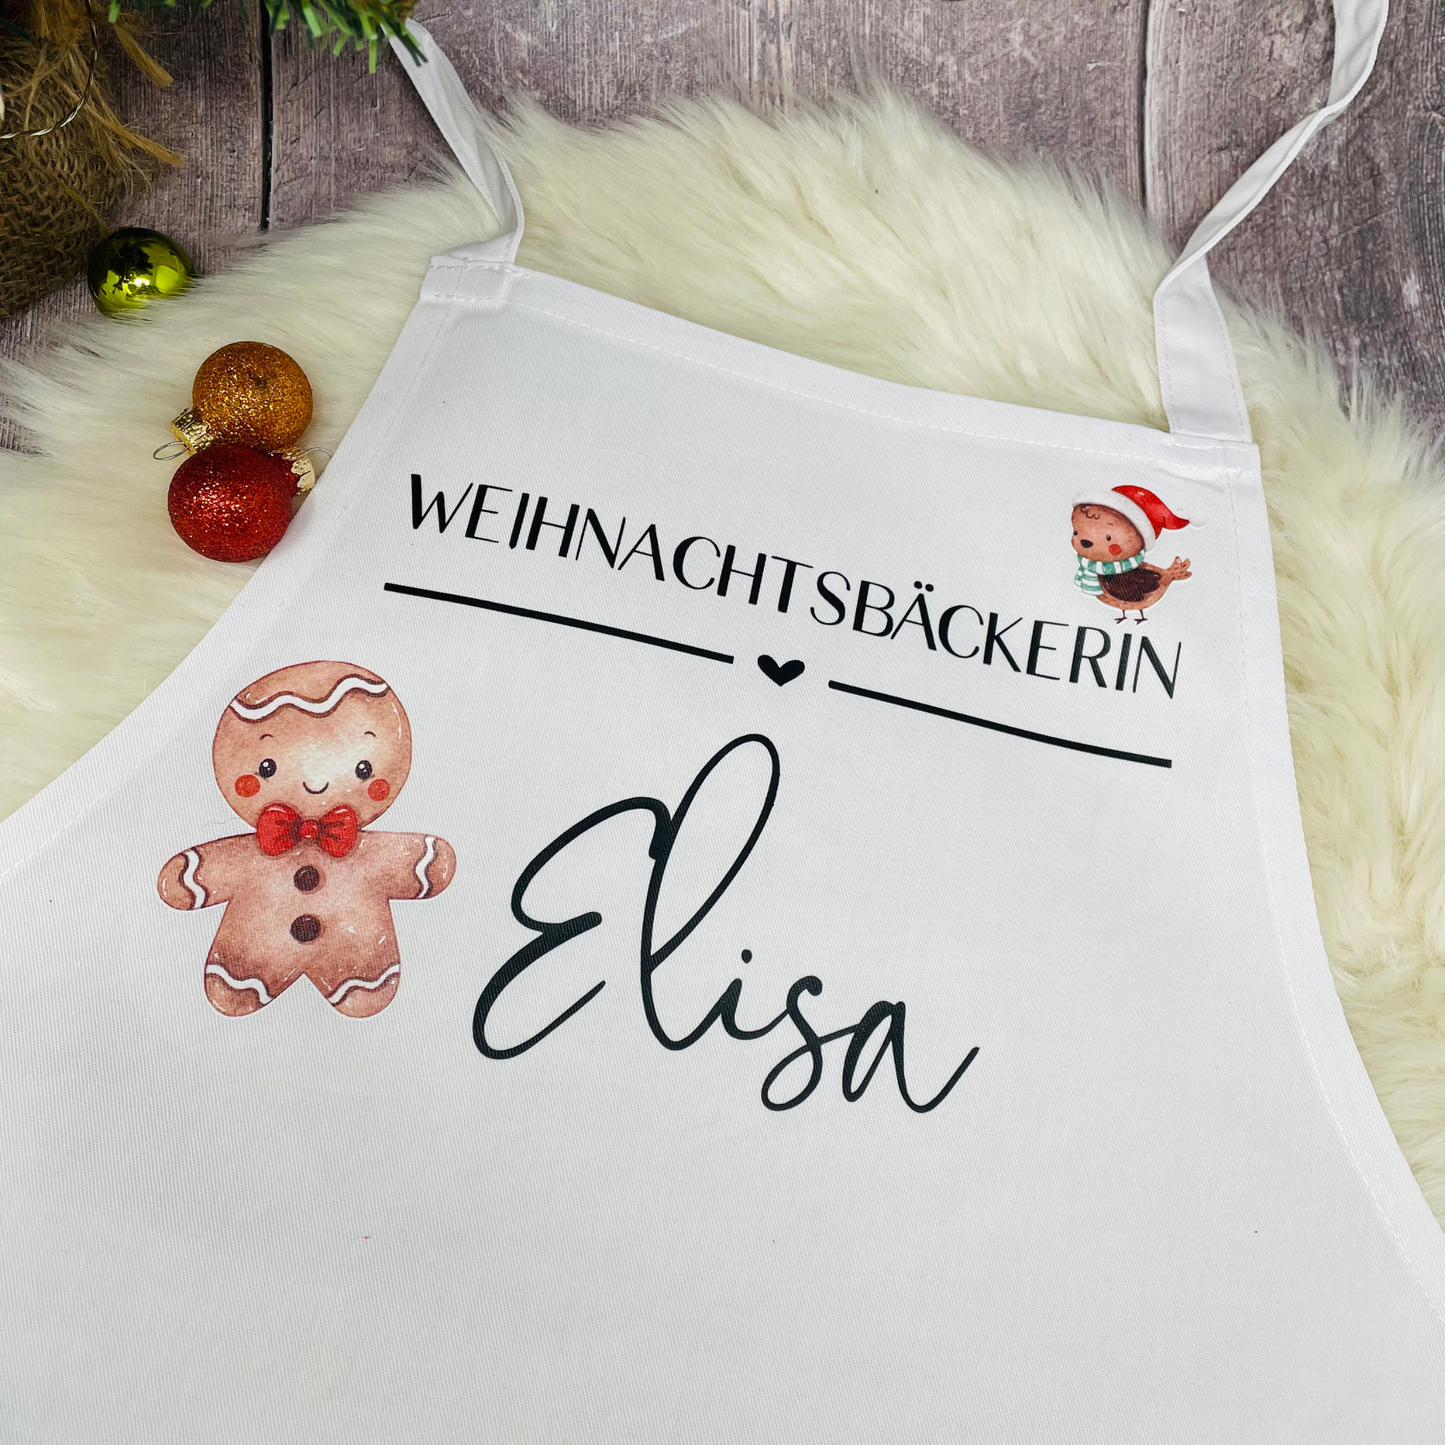 Schürze Kinderschürze Weihnachtsbäcker Bäckerin personalisiert mit Titel und Name, zum Backen, Basteln und Gärtnern - weiß Lebkuchenmann